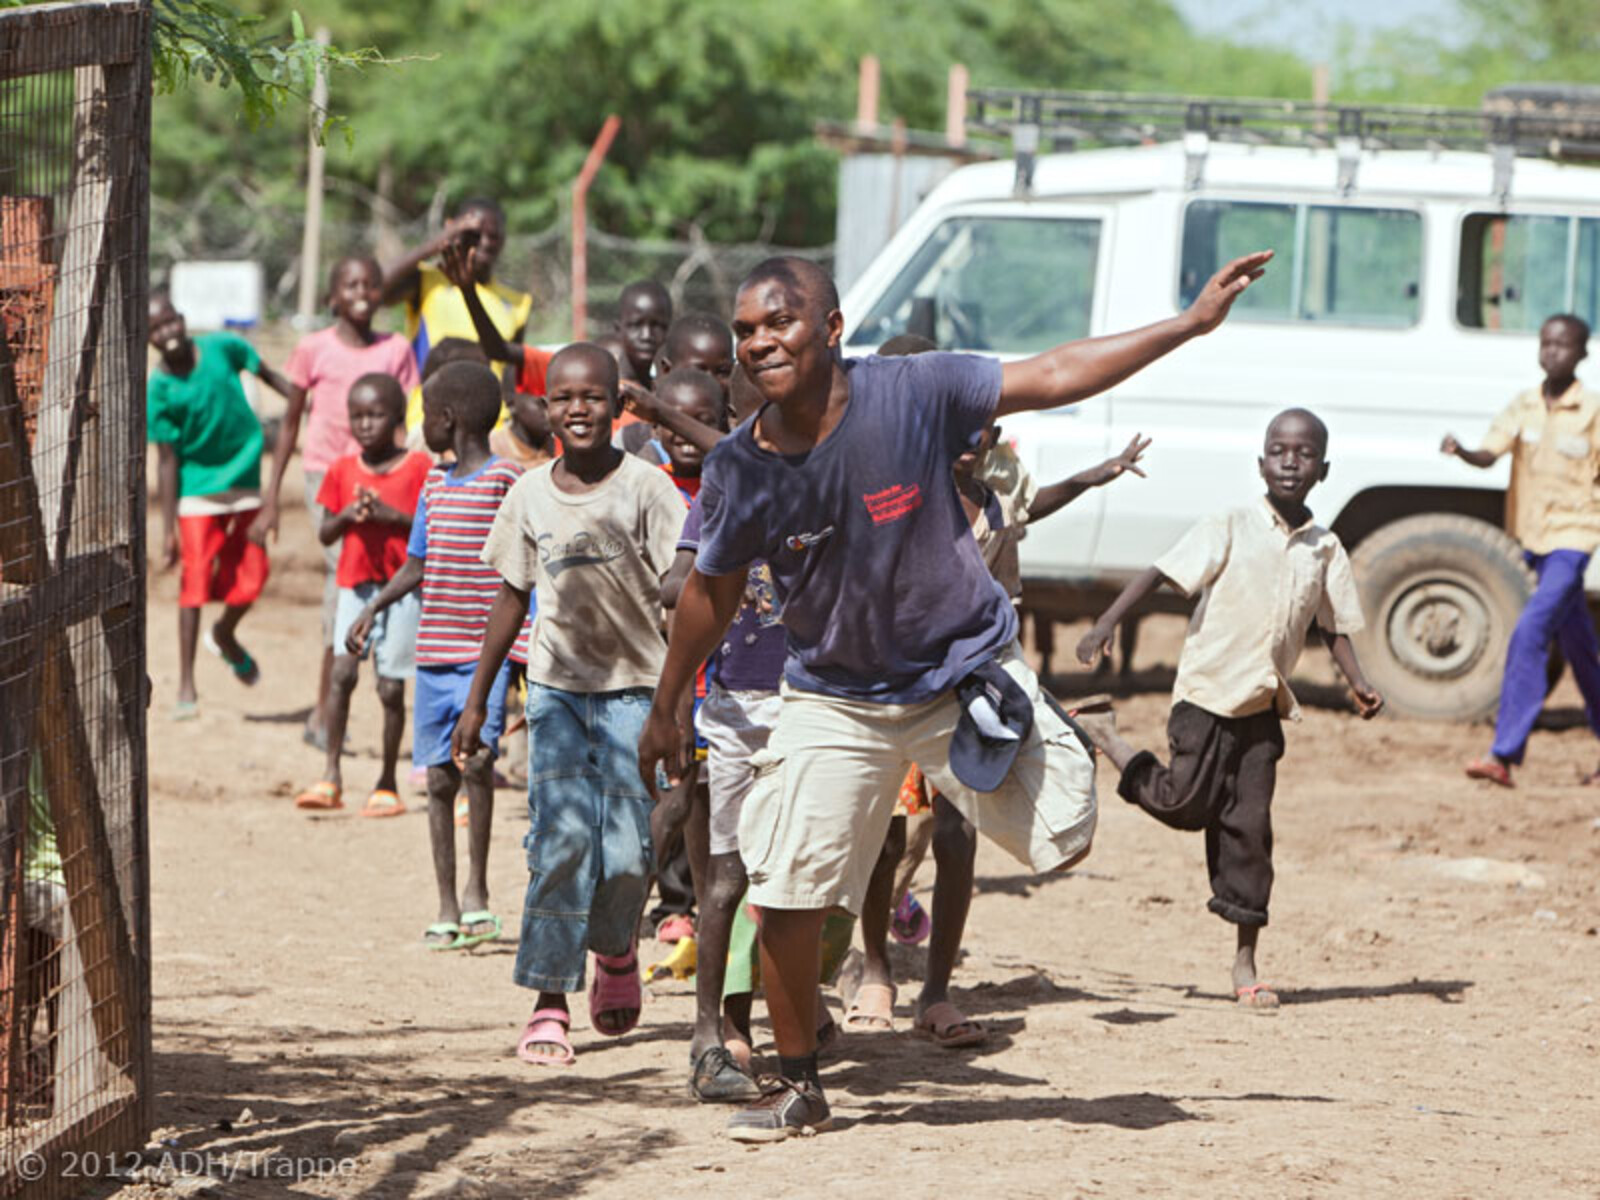 Jeden Morgen veranstalten die „Freunde“ singend und tanzend einen kleinen Umzug durch das Flüchtlingslager Kakuma.